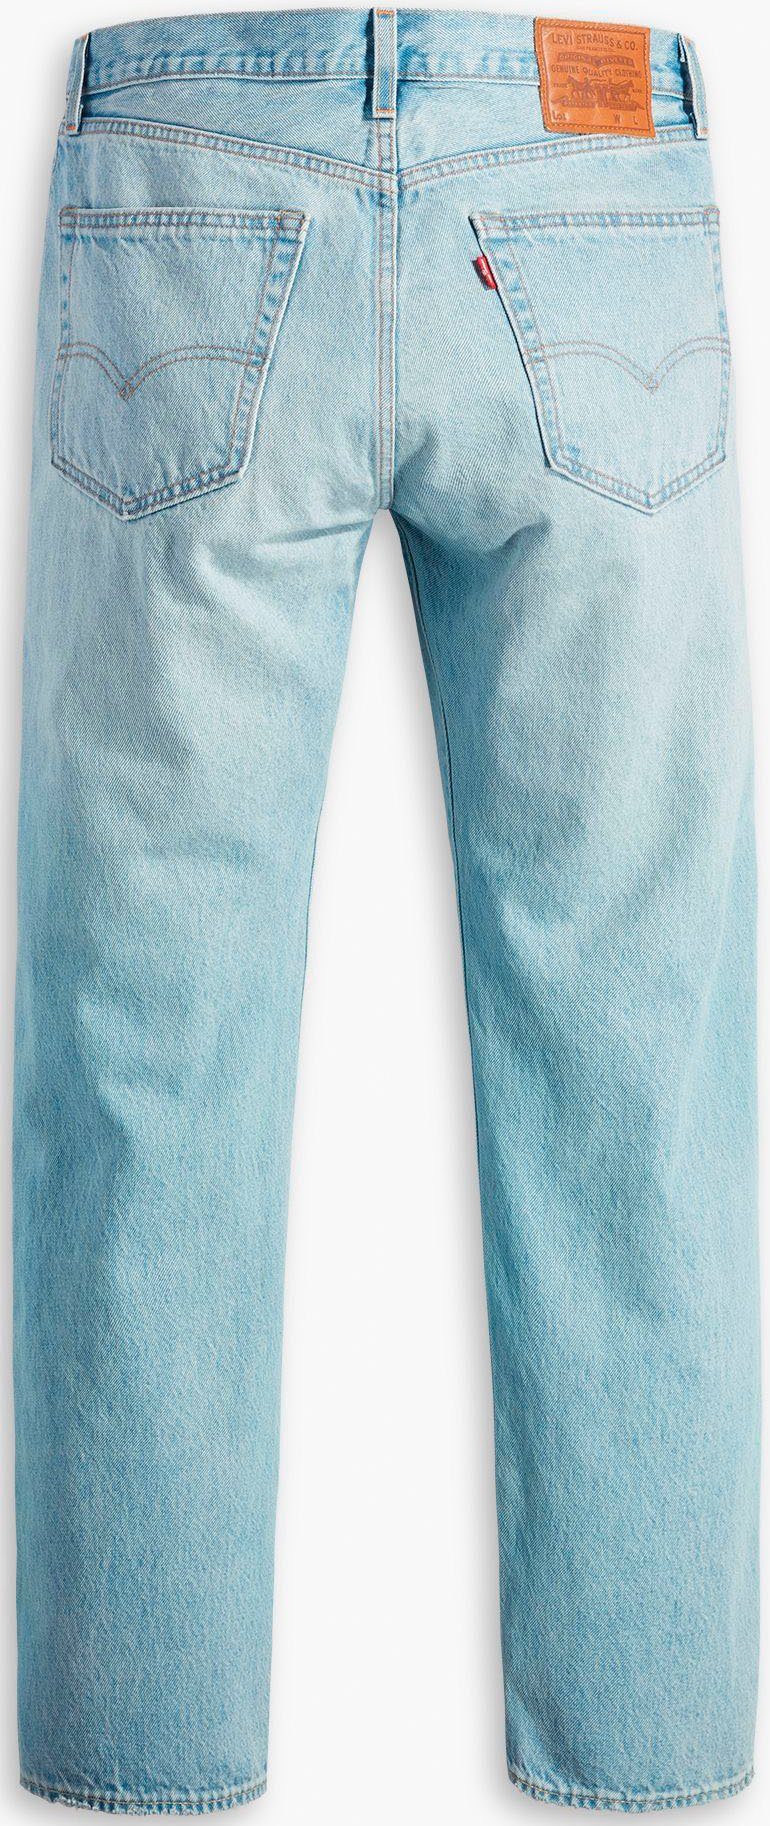 Levi's® Straight-Jeans 551Z AUTHENTIC Lederbadge me just squeez mit